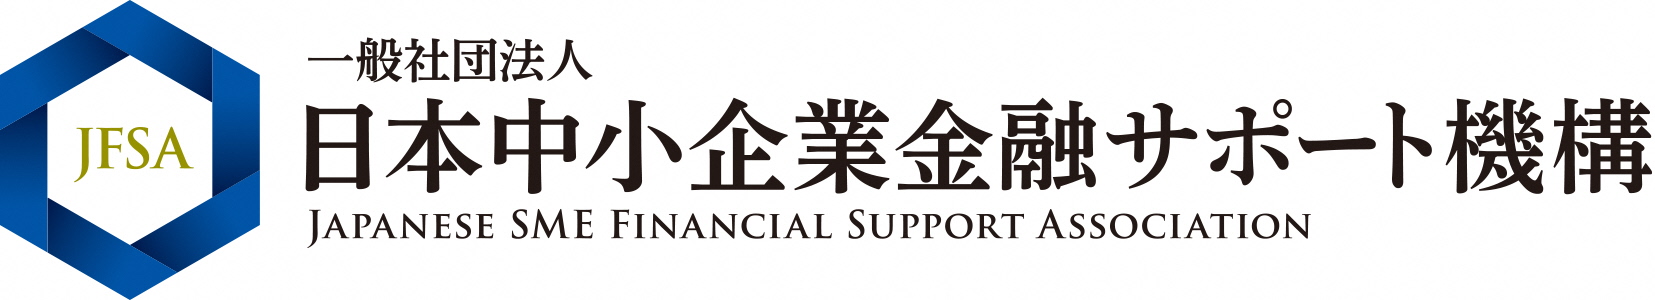 一般社団法人日本中小企業金融サポート機構 ロゴ